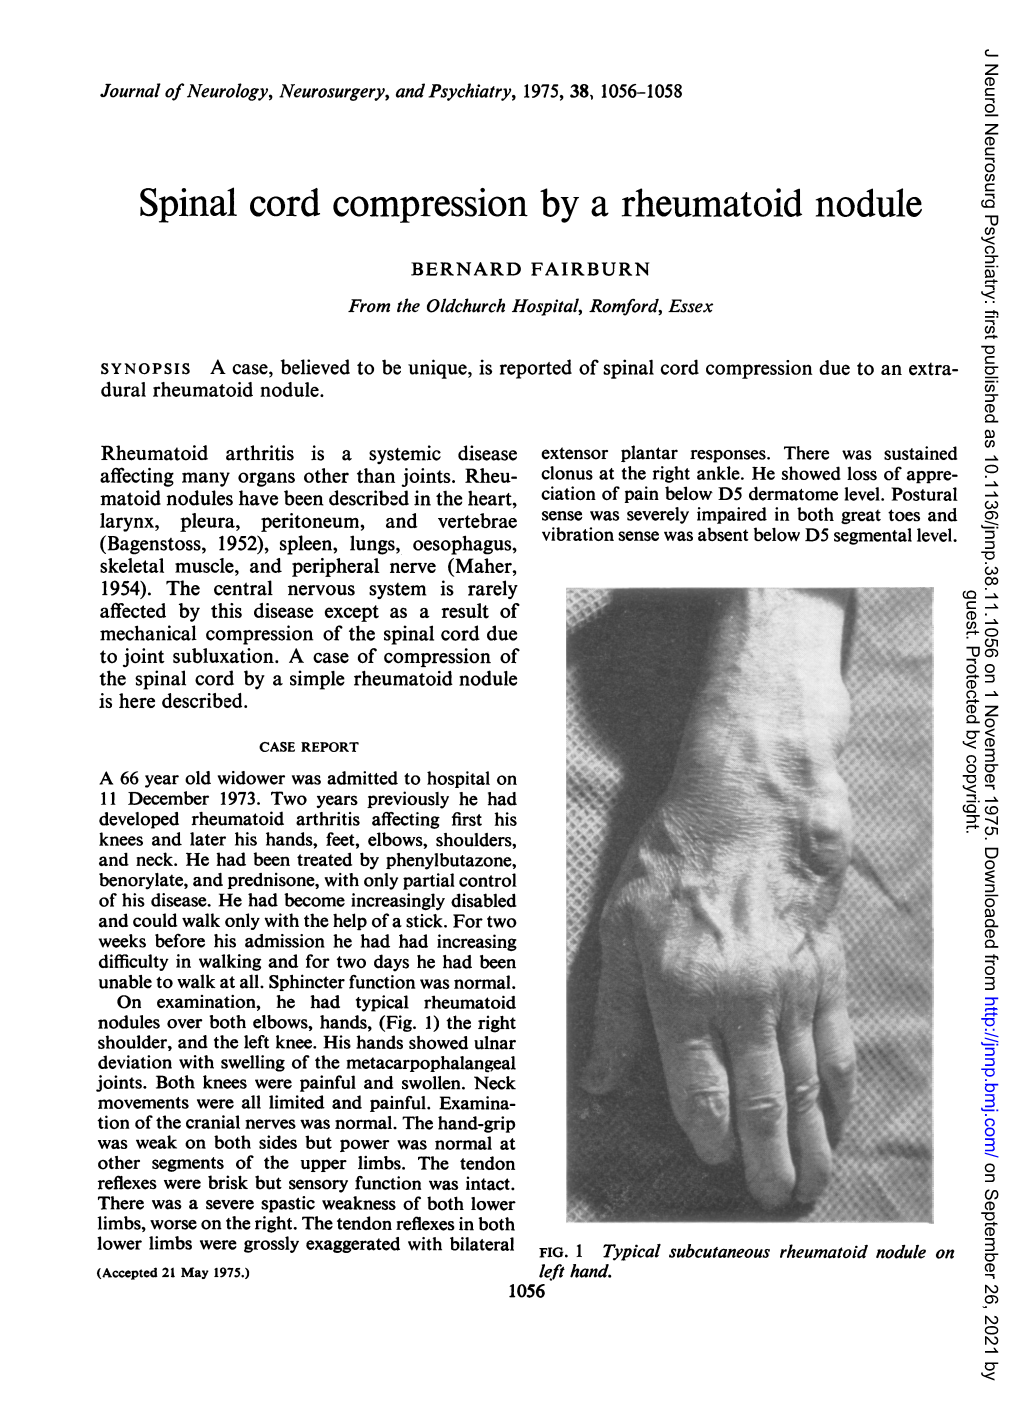 Spinal Cord Compression by a Rheumatoid Nodule